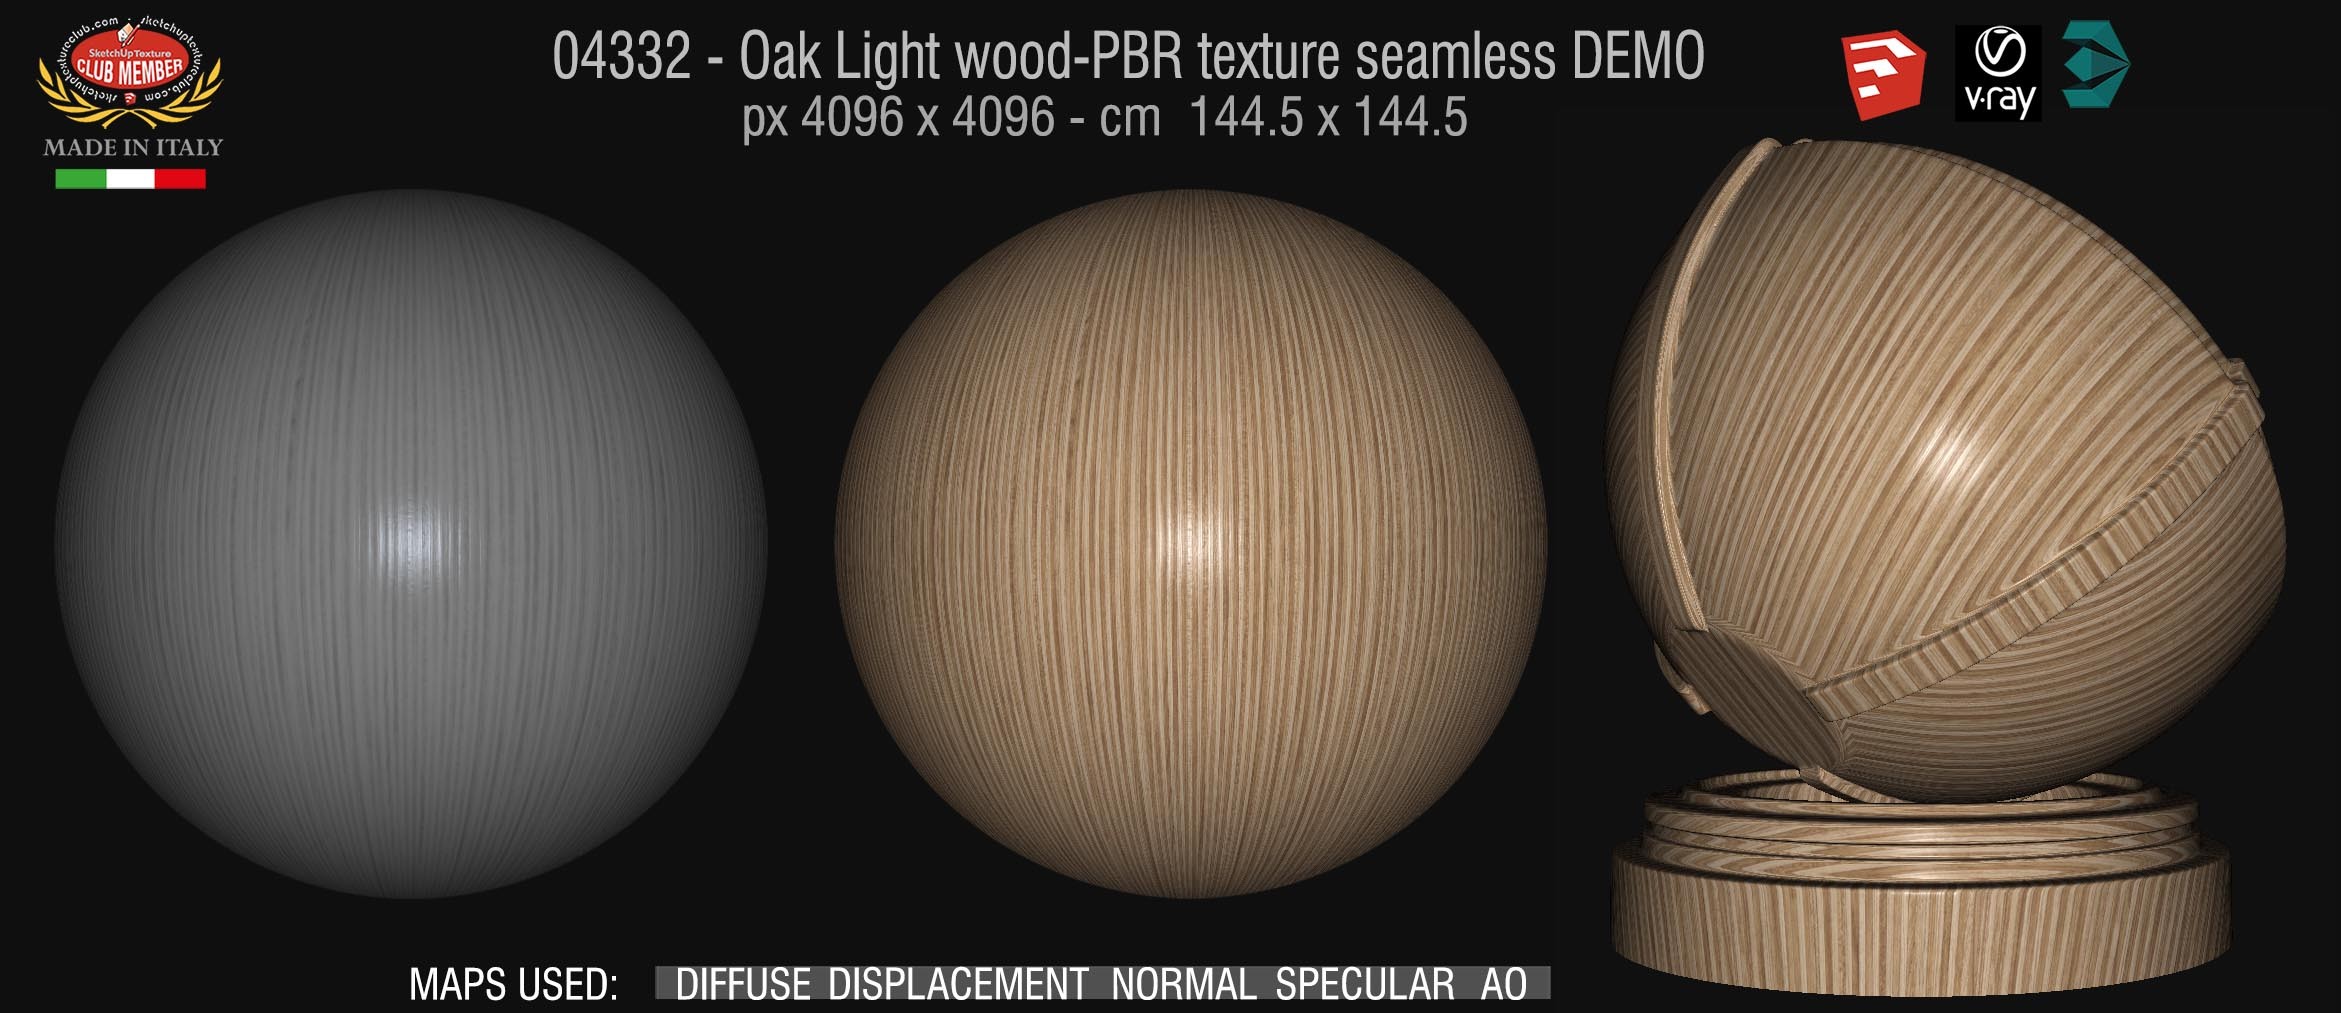 04332 Oak Light wood-PBR texture seamless DEMO